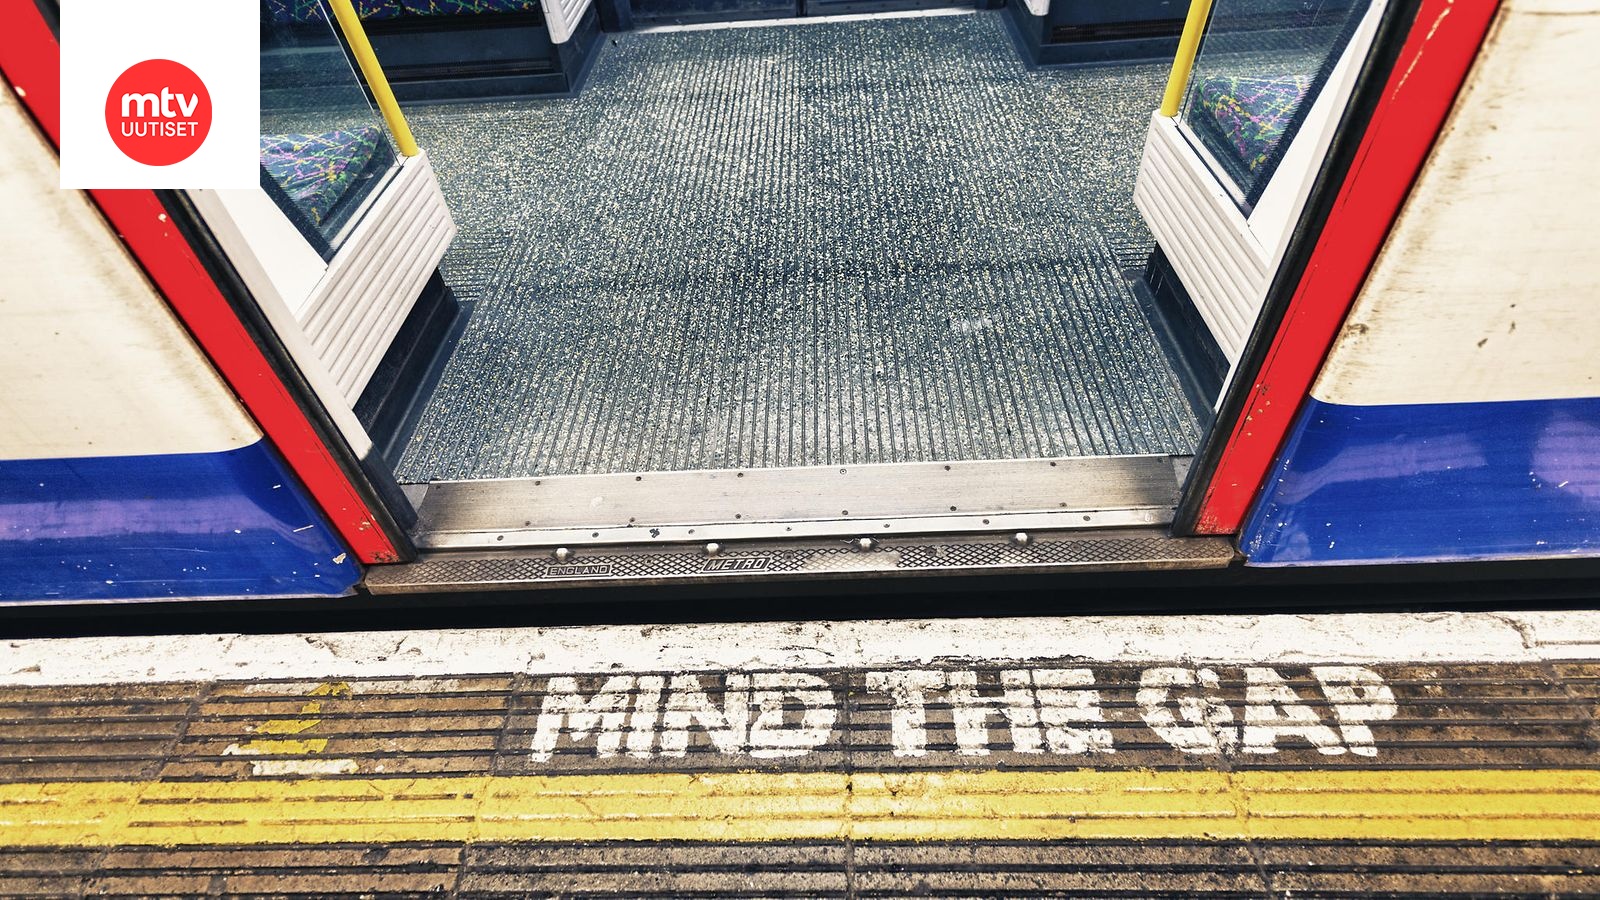 Englantilaistoimittaja selvitti, kuinka likaista Lontoon metroissa on –  tulokset järkyttivät tutkijan 